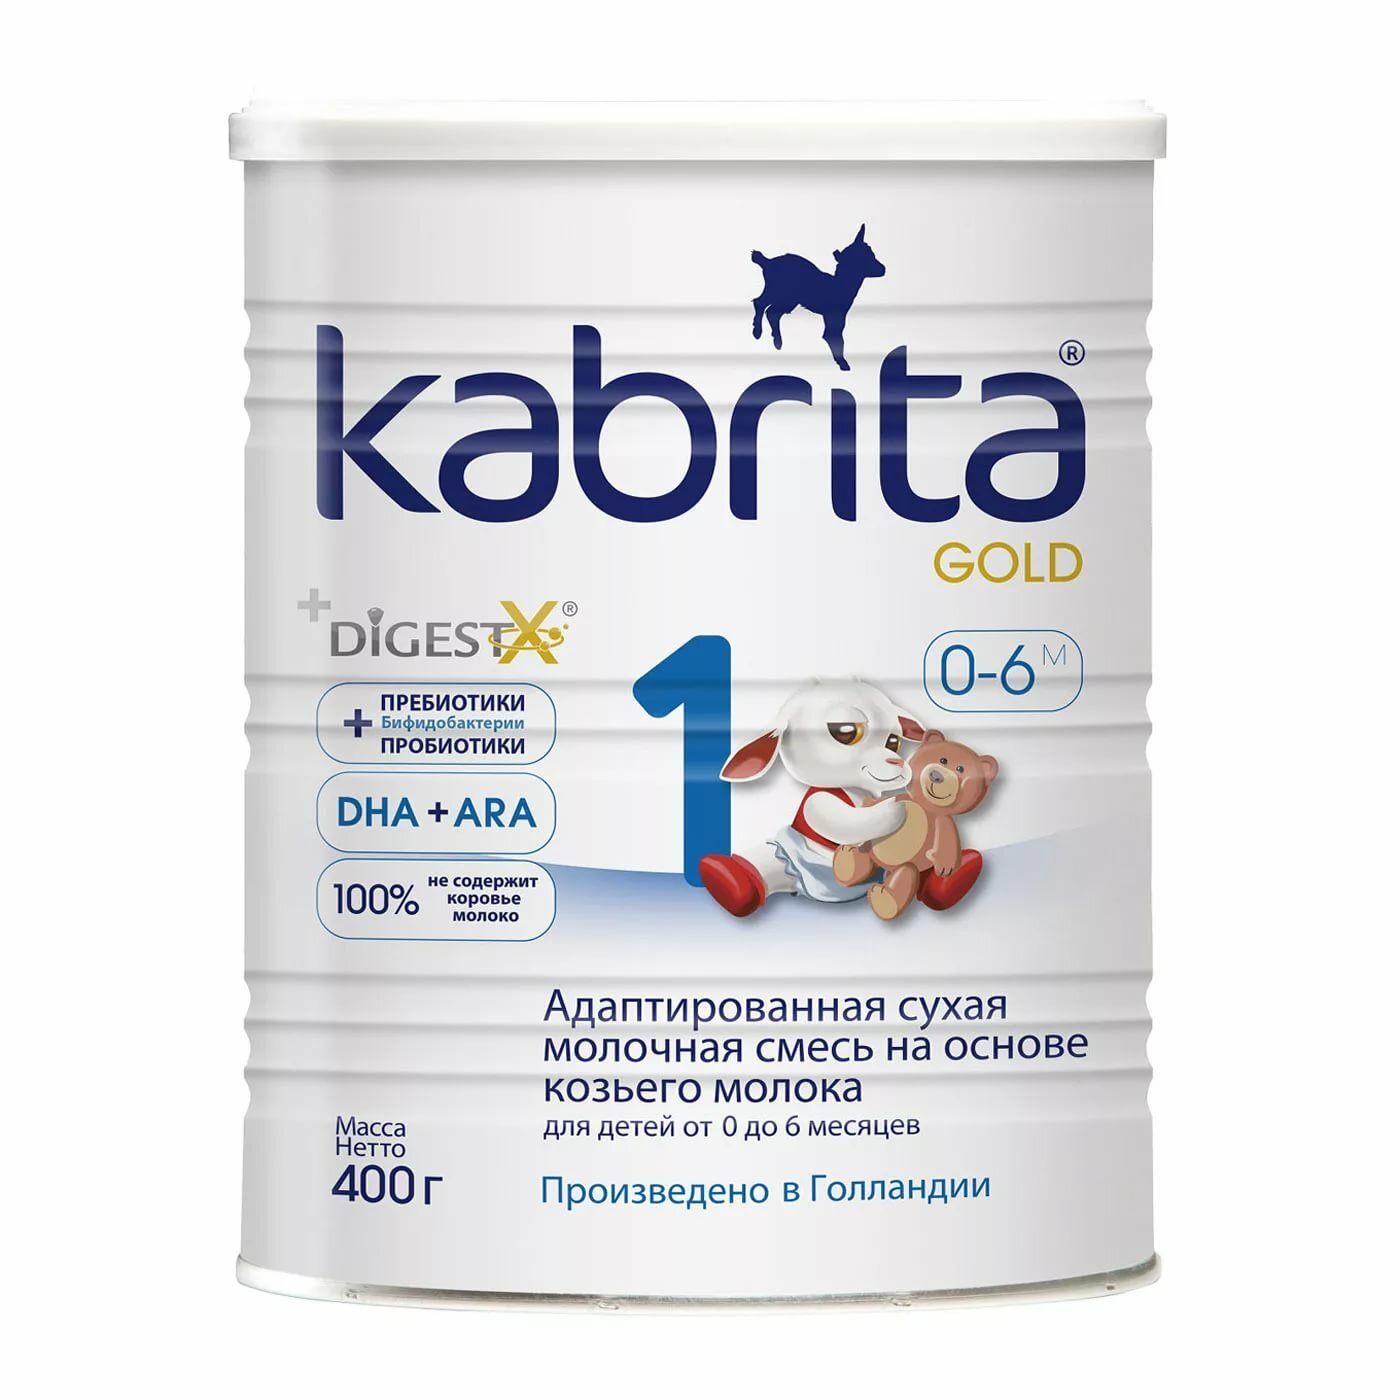 Молочная смесь KABRITA 1 GOLD на козьем молоке (0-6 мес), 400г